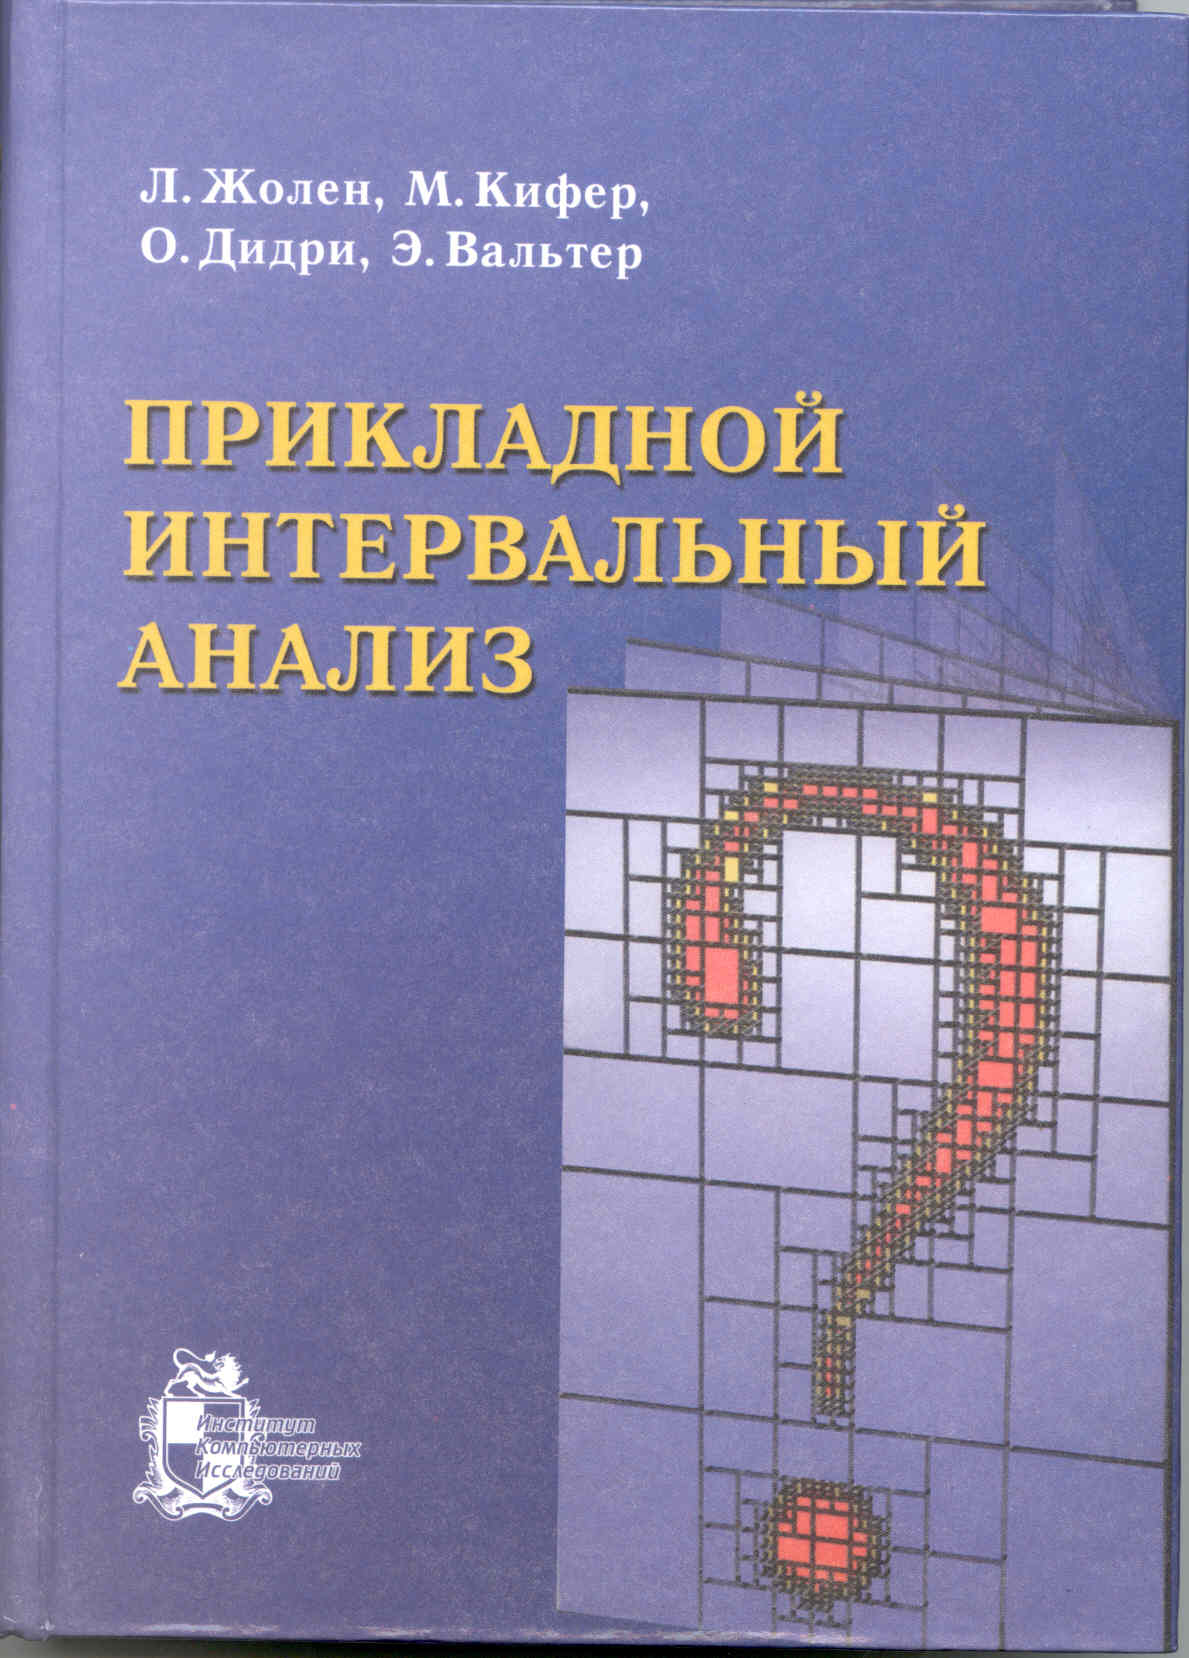 book_aia_ru.jpg